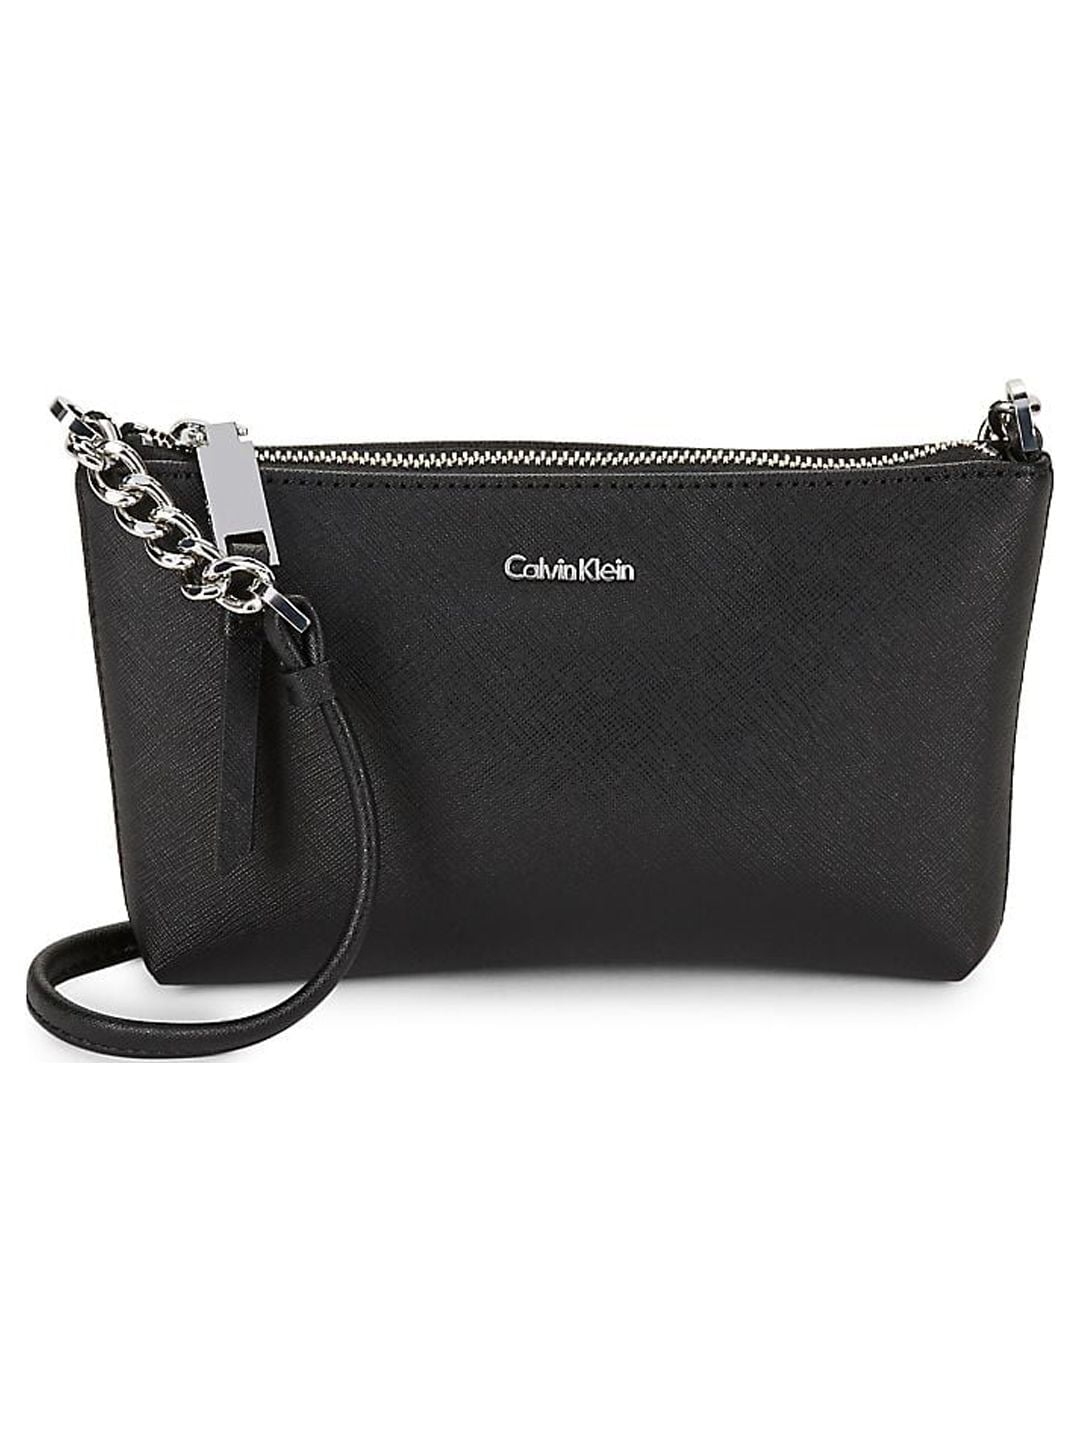 New Calvin Klein Hayden Saffiano Leather Crossbody  Saffiano leather,  Calvin klein bag, Leather crossbody